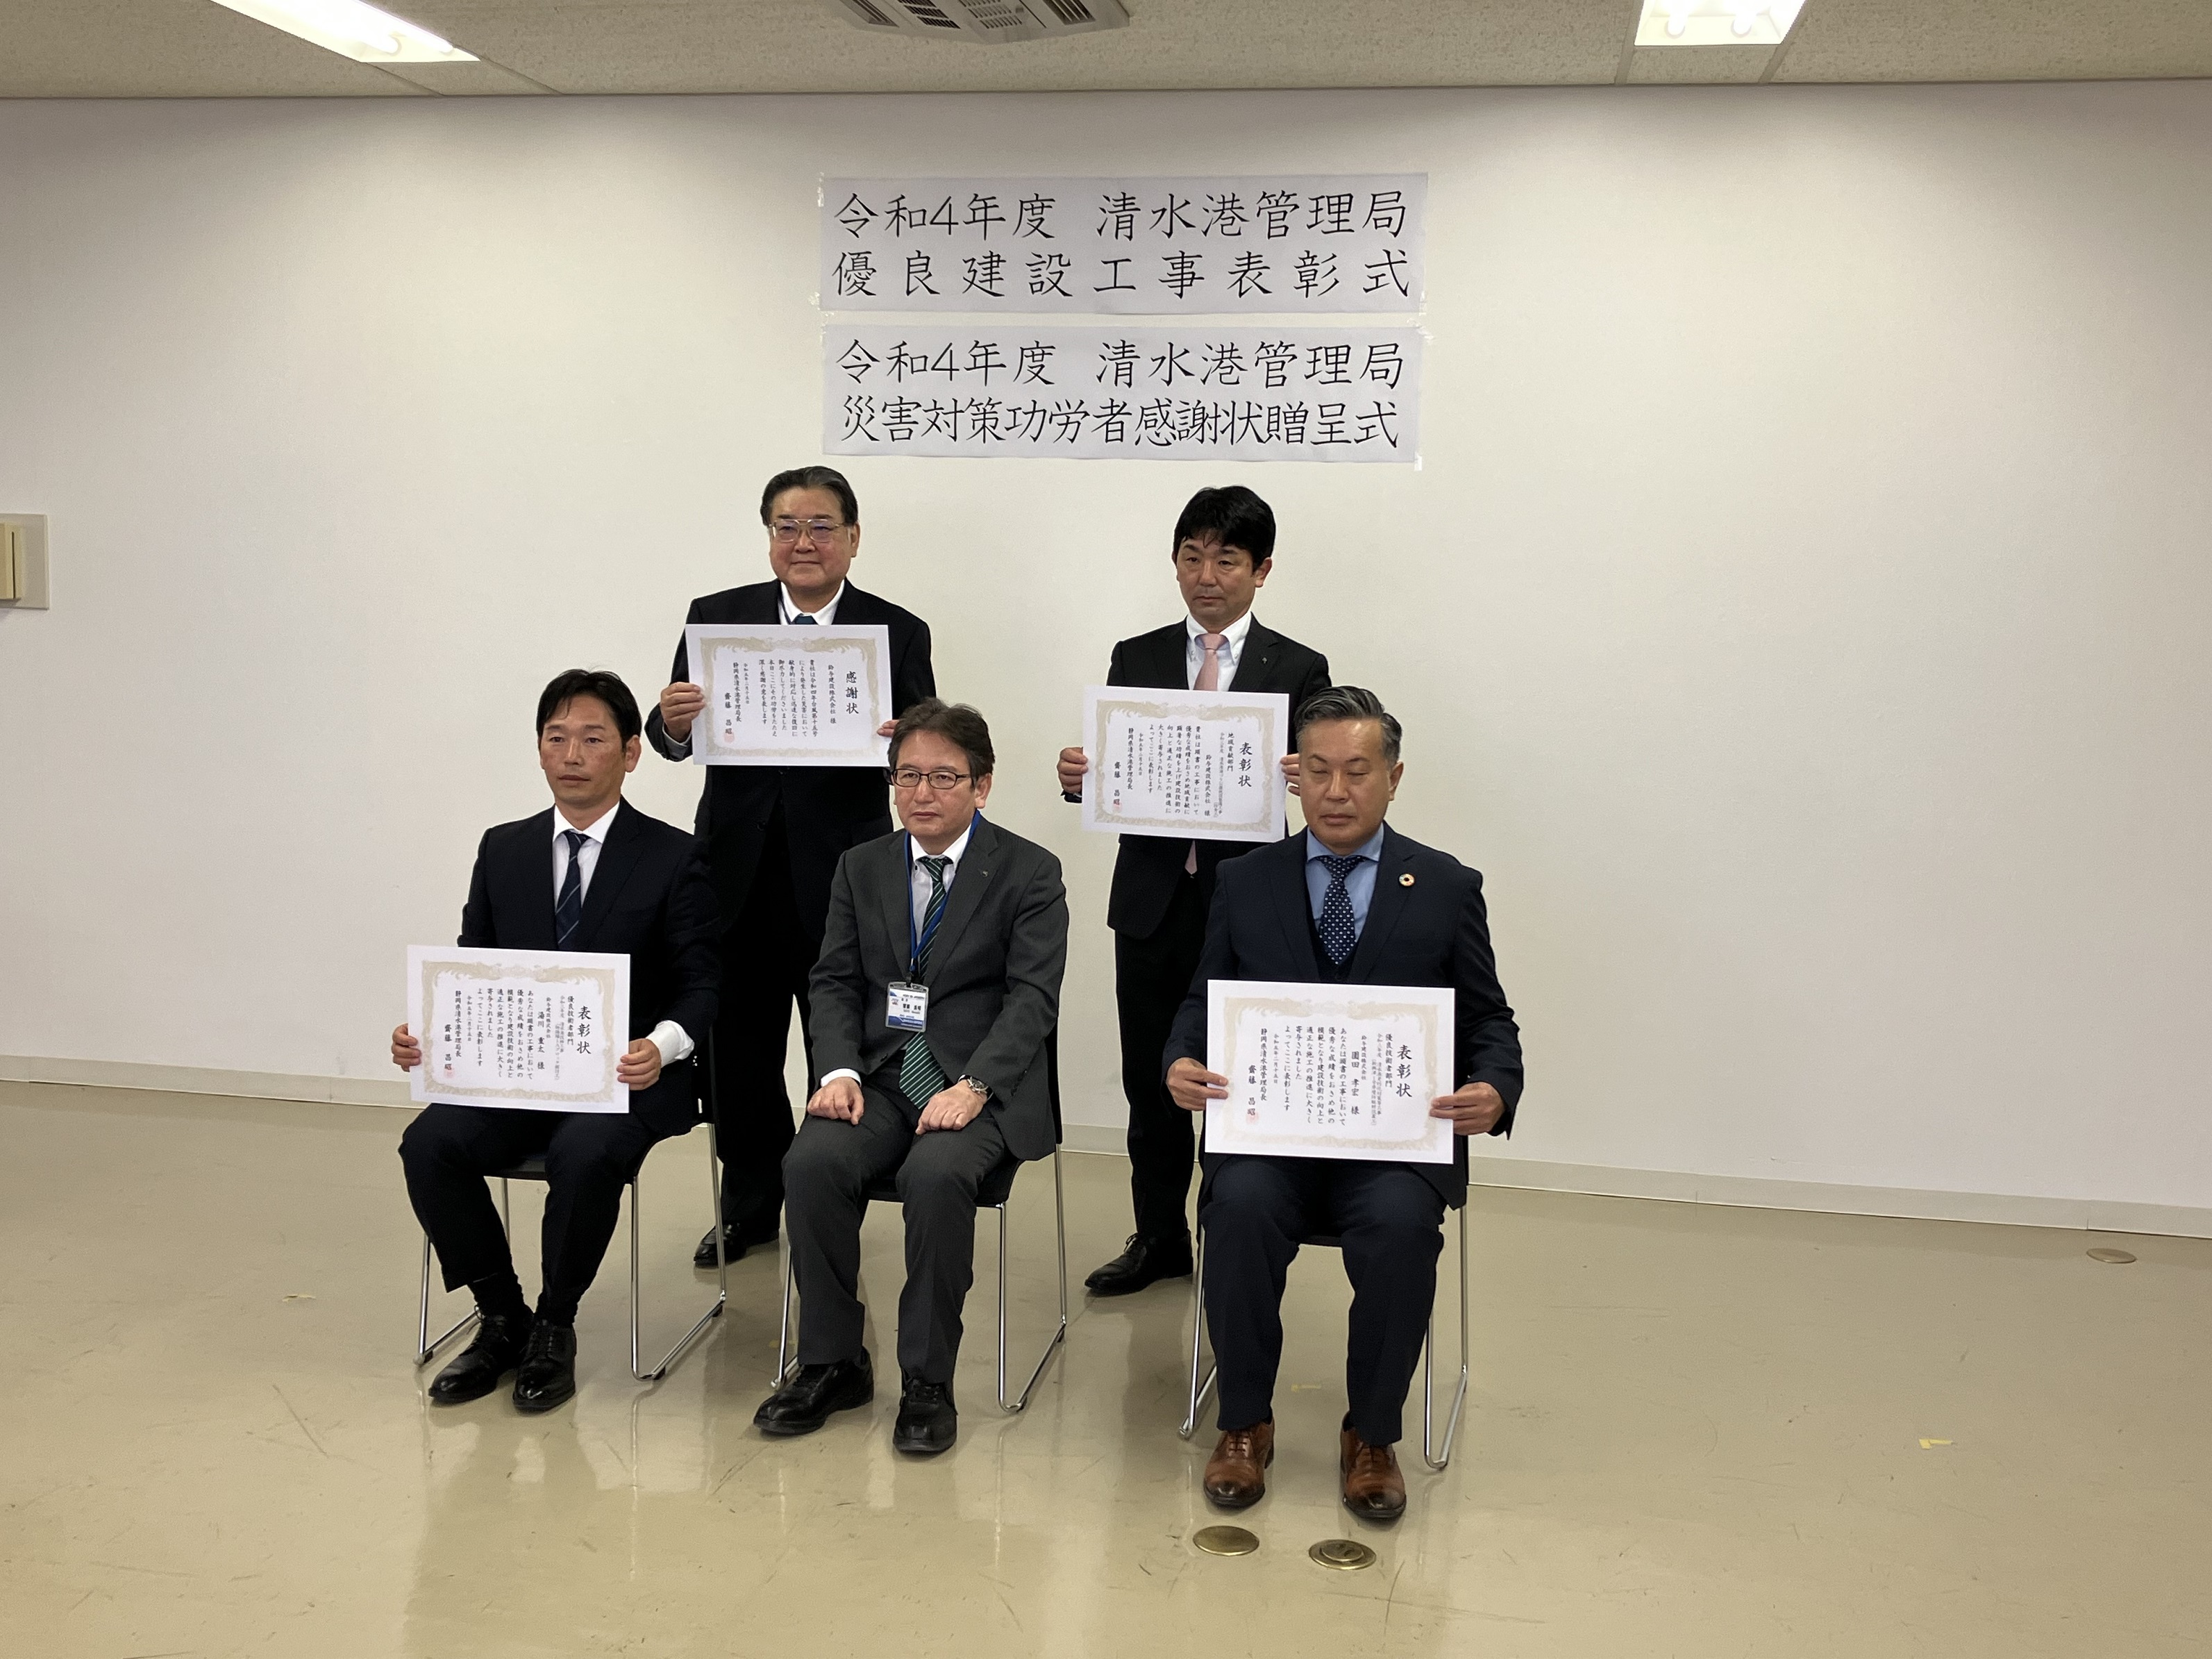 静岡県清水港管理局様より「優良技術者部門」及び「地域貢献部門」にて局長表彰をいただきました！